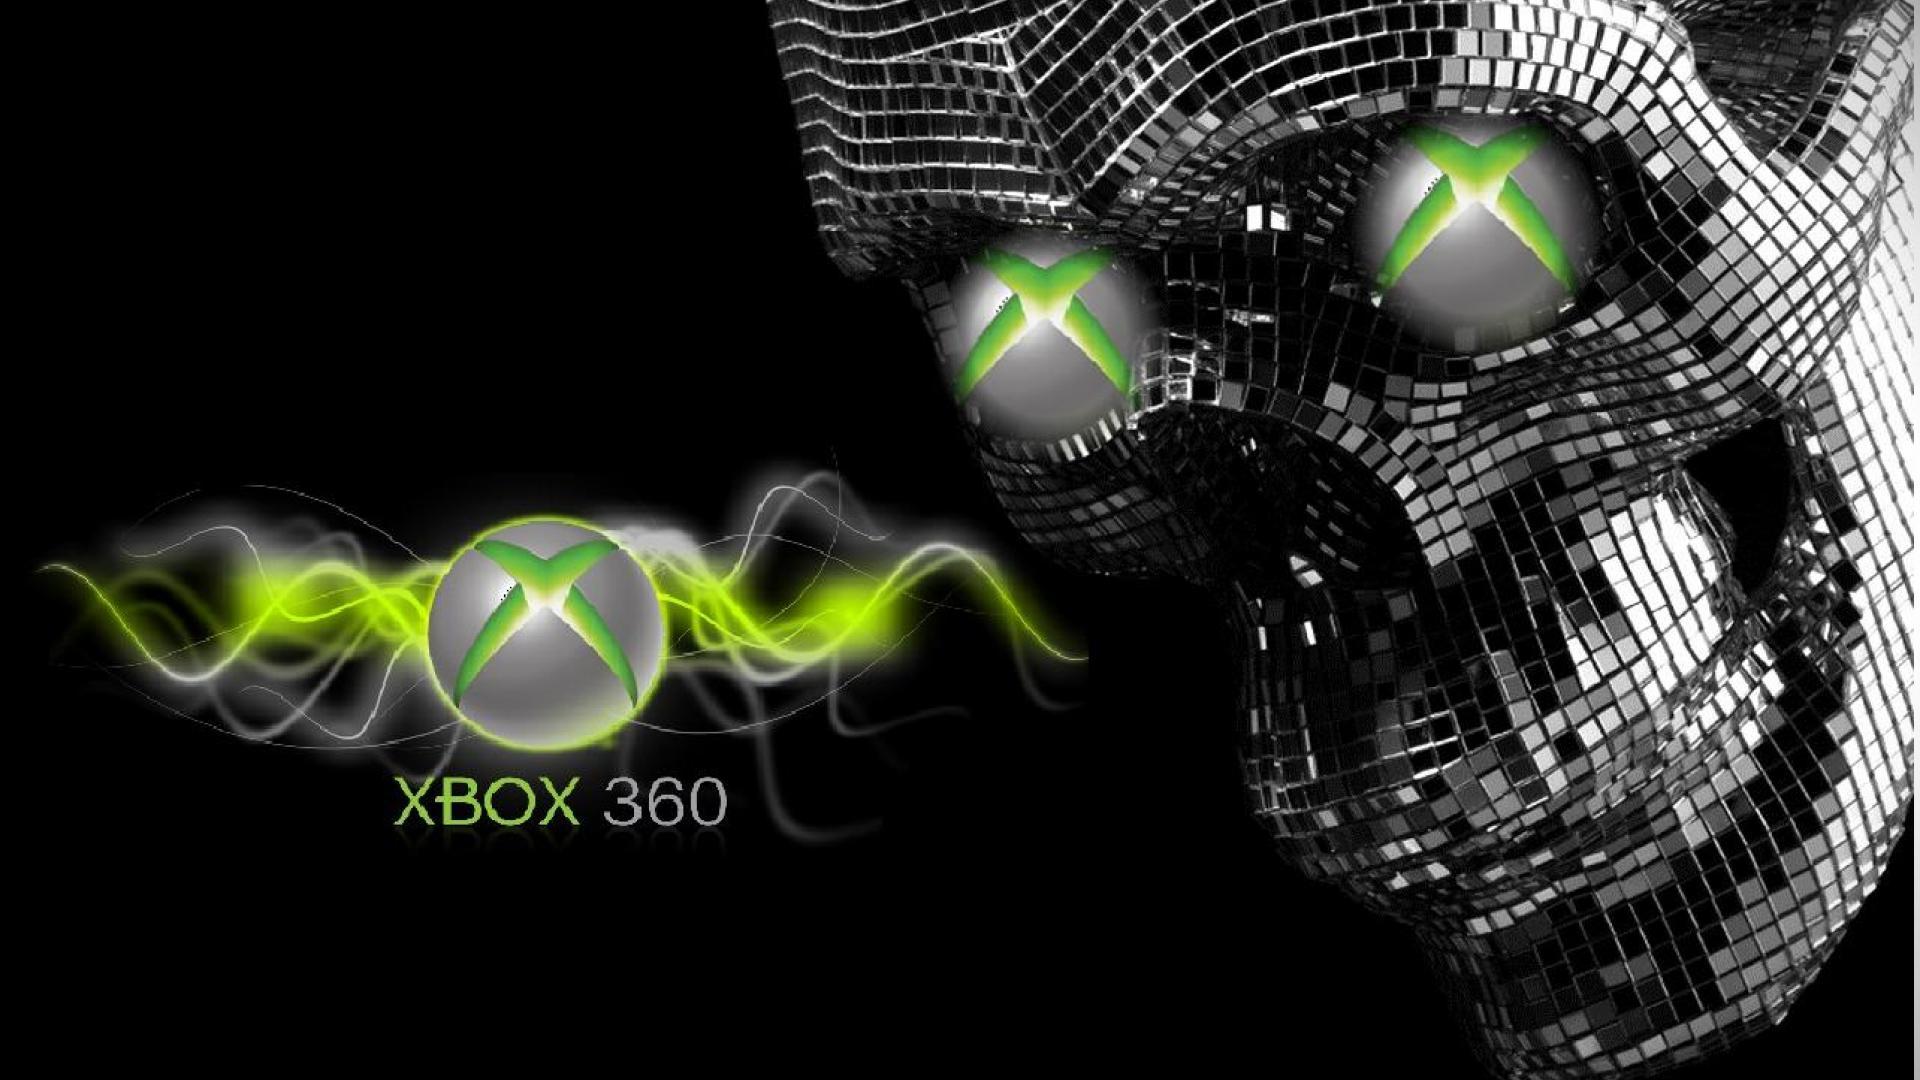 Nếu bạn đang tìm kiếm một hình nền đẹp và độc đáo cho màn hình Xbox 360 của mình, thì đừng bỏ lỡ bức hình này. Với màu sắc sáng tạo và tinh tế, hình nền Xbox 360 sẽ làm cho màn hình của bạn trở nên sinh động và rực rỡ.